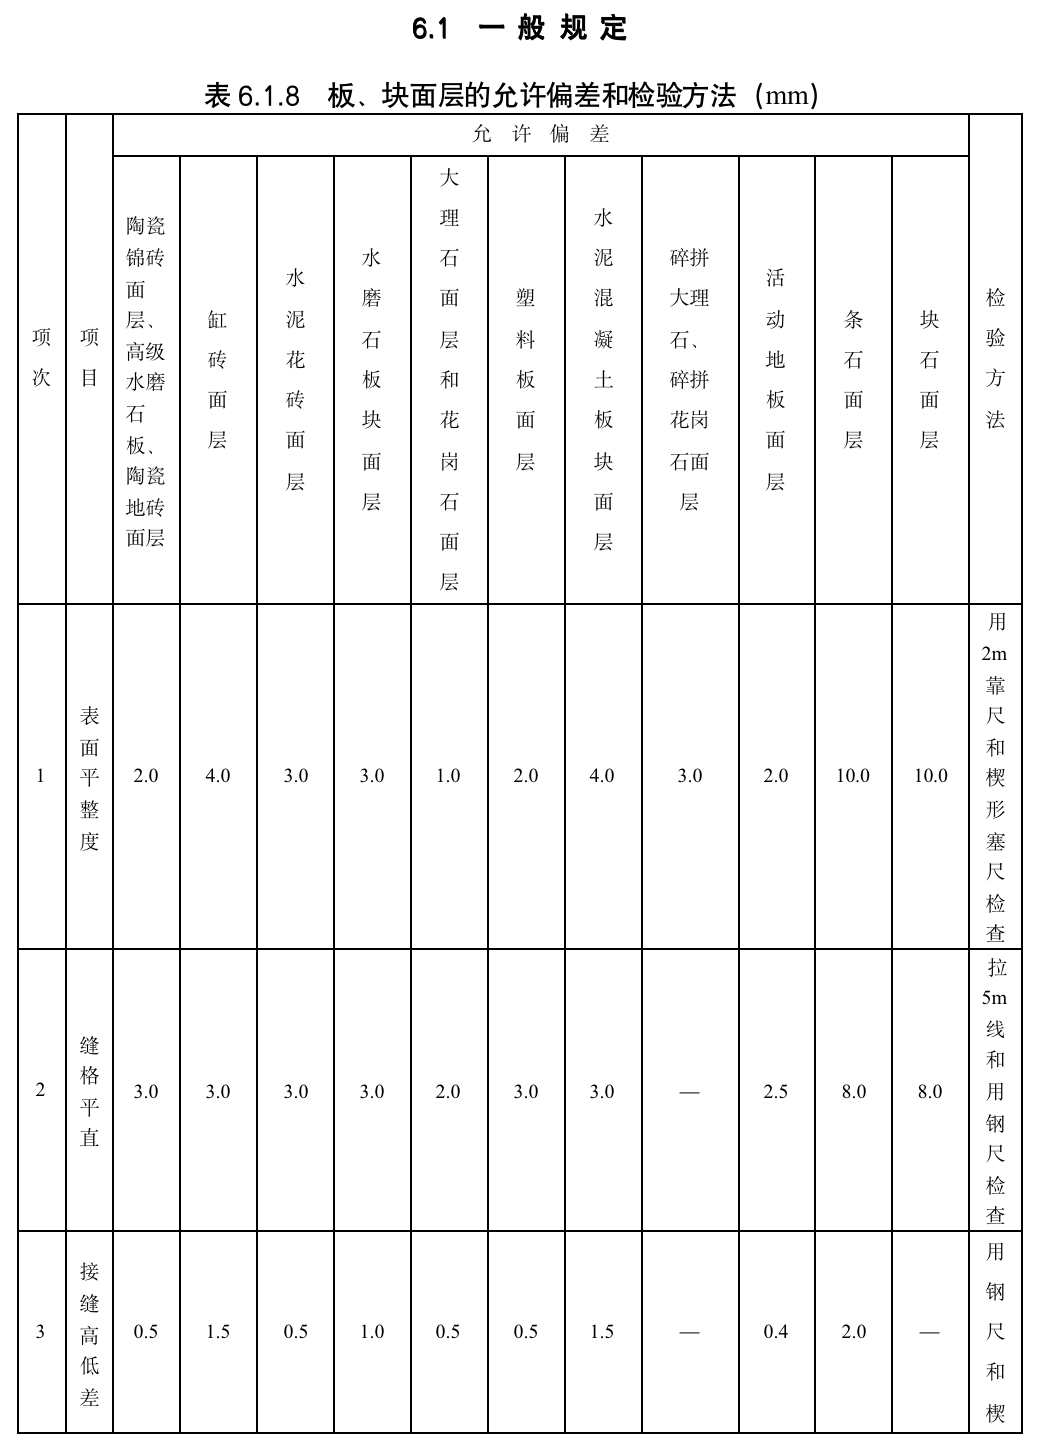 表6.1.8 A 板、块面层的允许偏差和检验方法（mm）